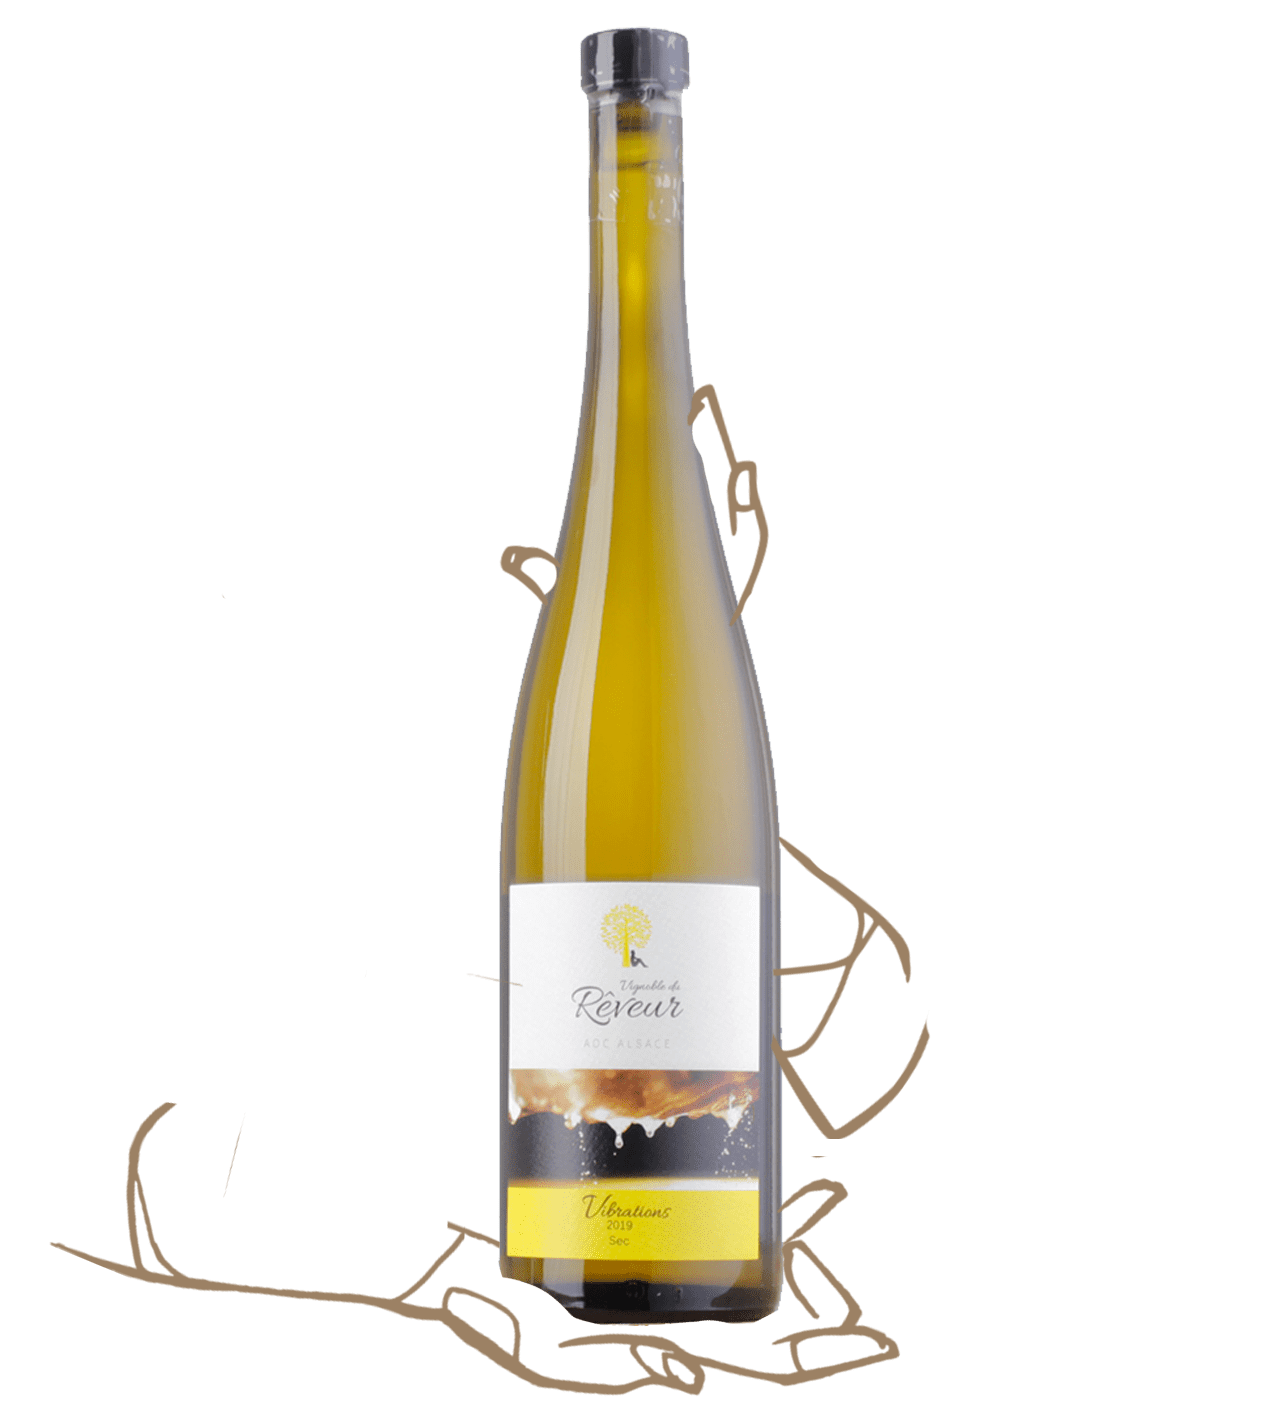 Vignoble du Rêveur (Mathieu Deiss) Vibration est un vin naturel d'Alsace